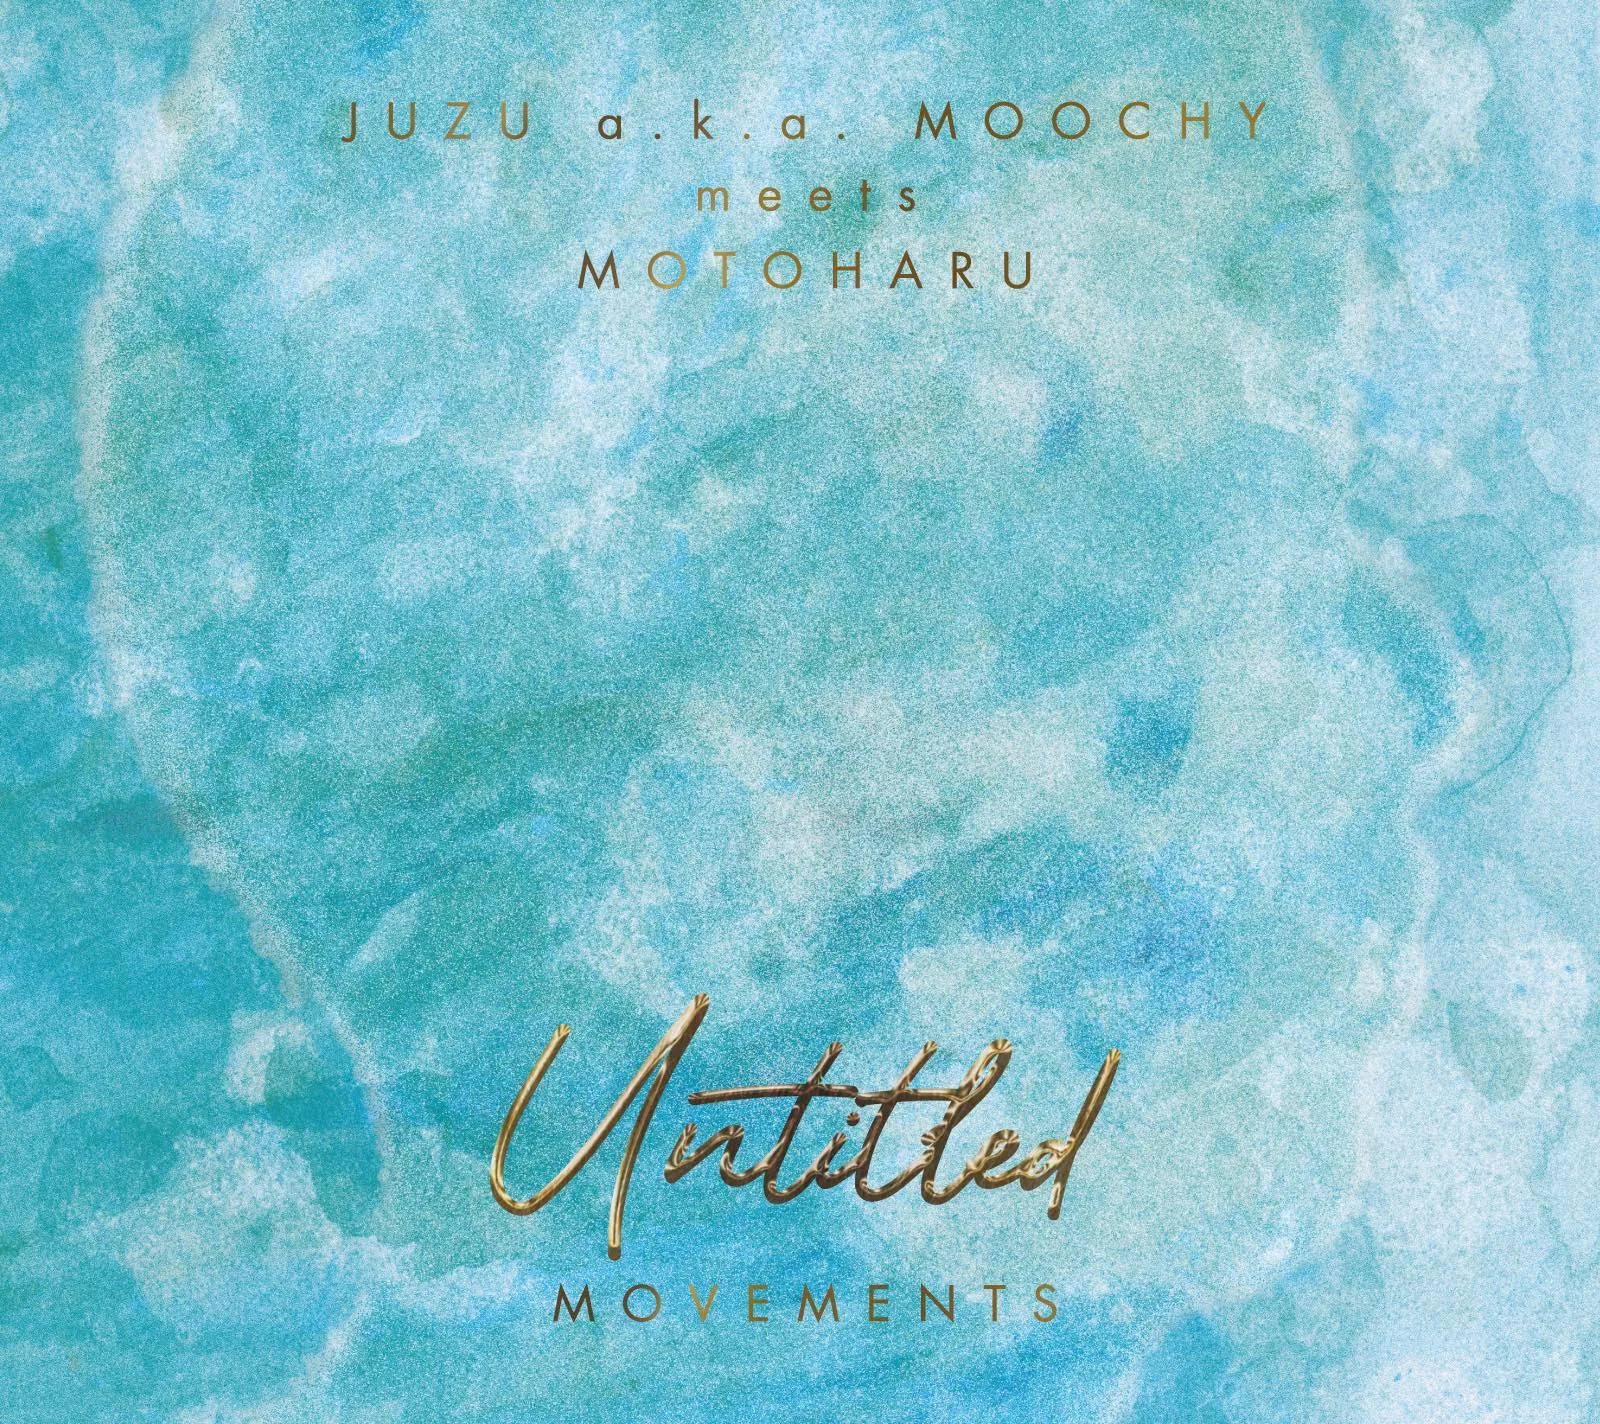 JUZU a.k.a.MOOCHY meets MOTOHARU - Untitled Movements : CD